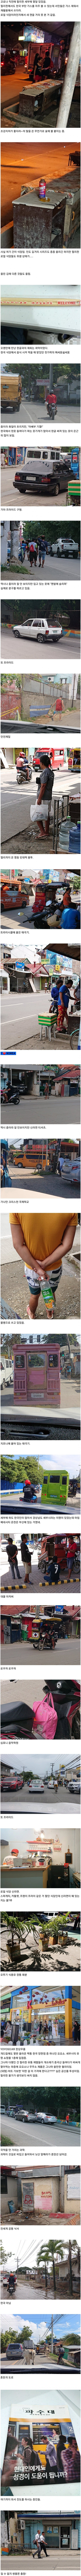 필리핀 세부에서 느껴지는 한국의 향기